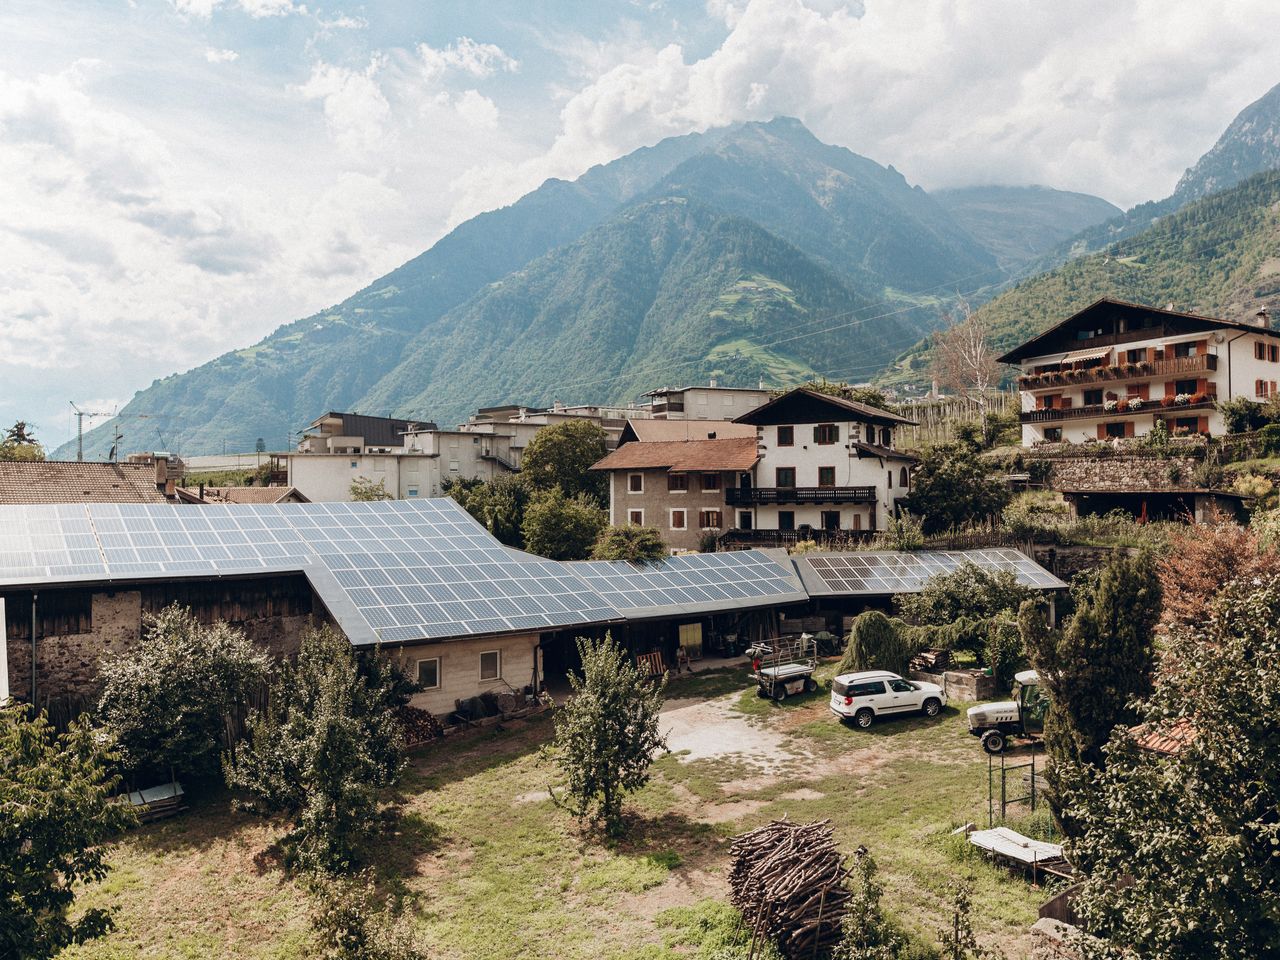 6 Tage Städtetrip nach Meran im malerischen Südtirol